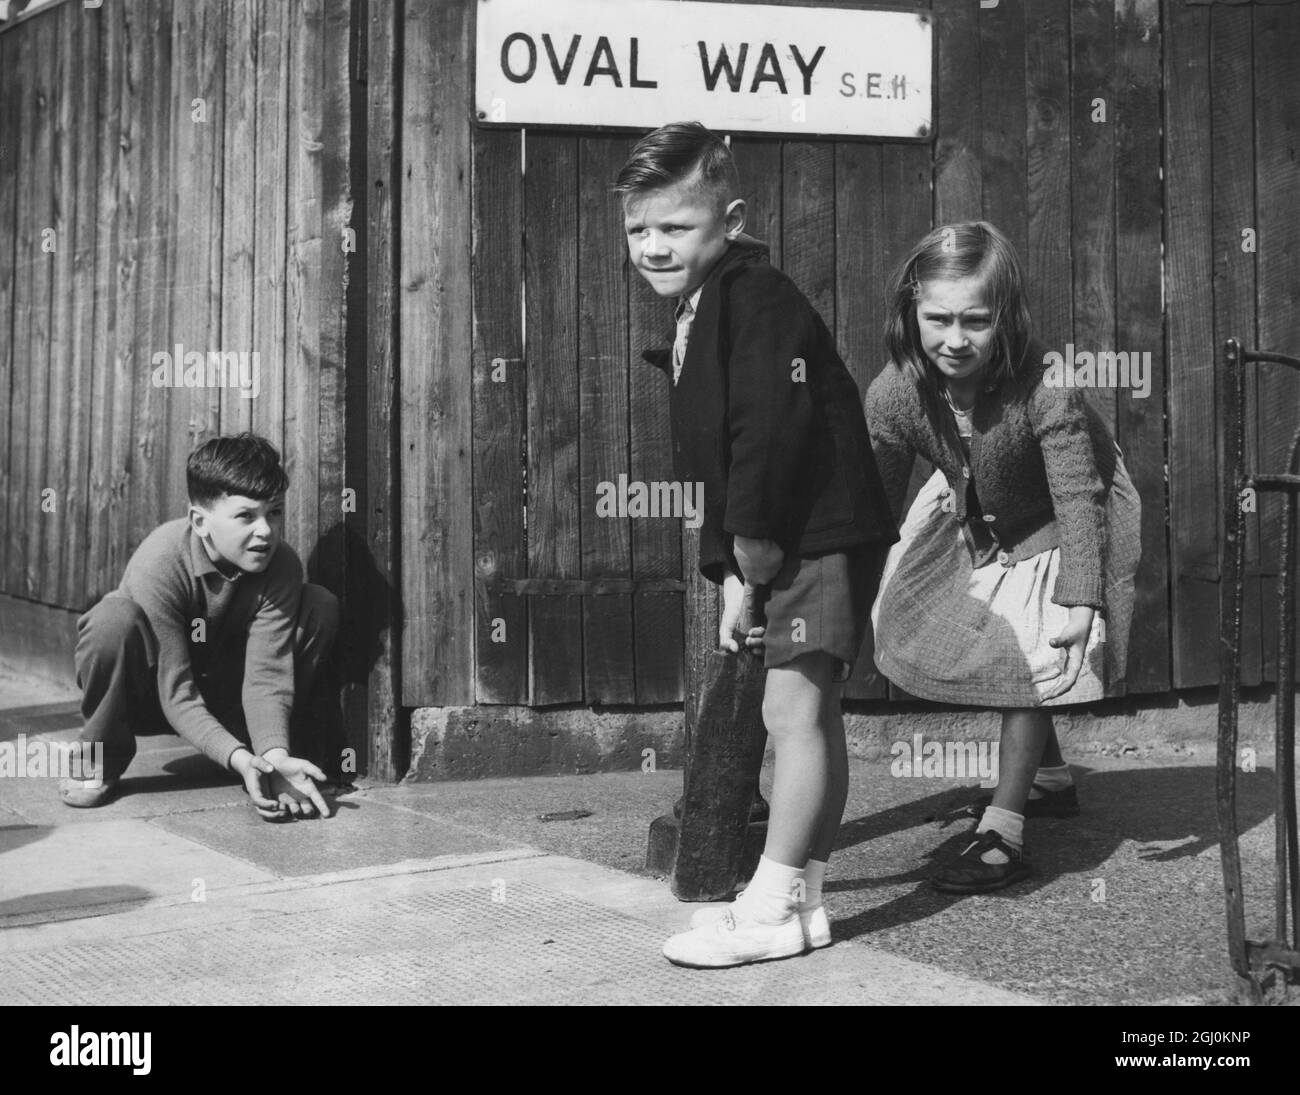 Enfants jouant un match de cricket dans la rue - Oval Way est le panneau de route derrière eux - août 1957 ©TopFoto Banque D'Images